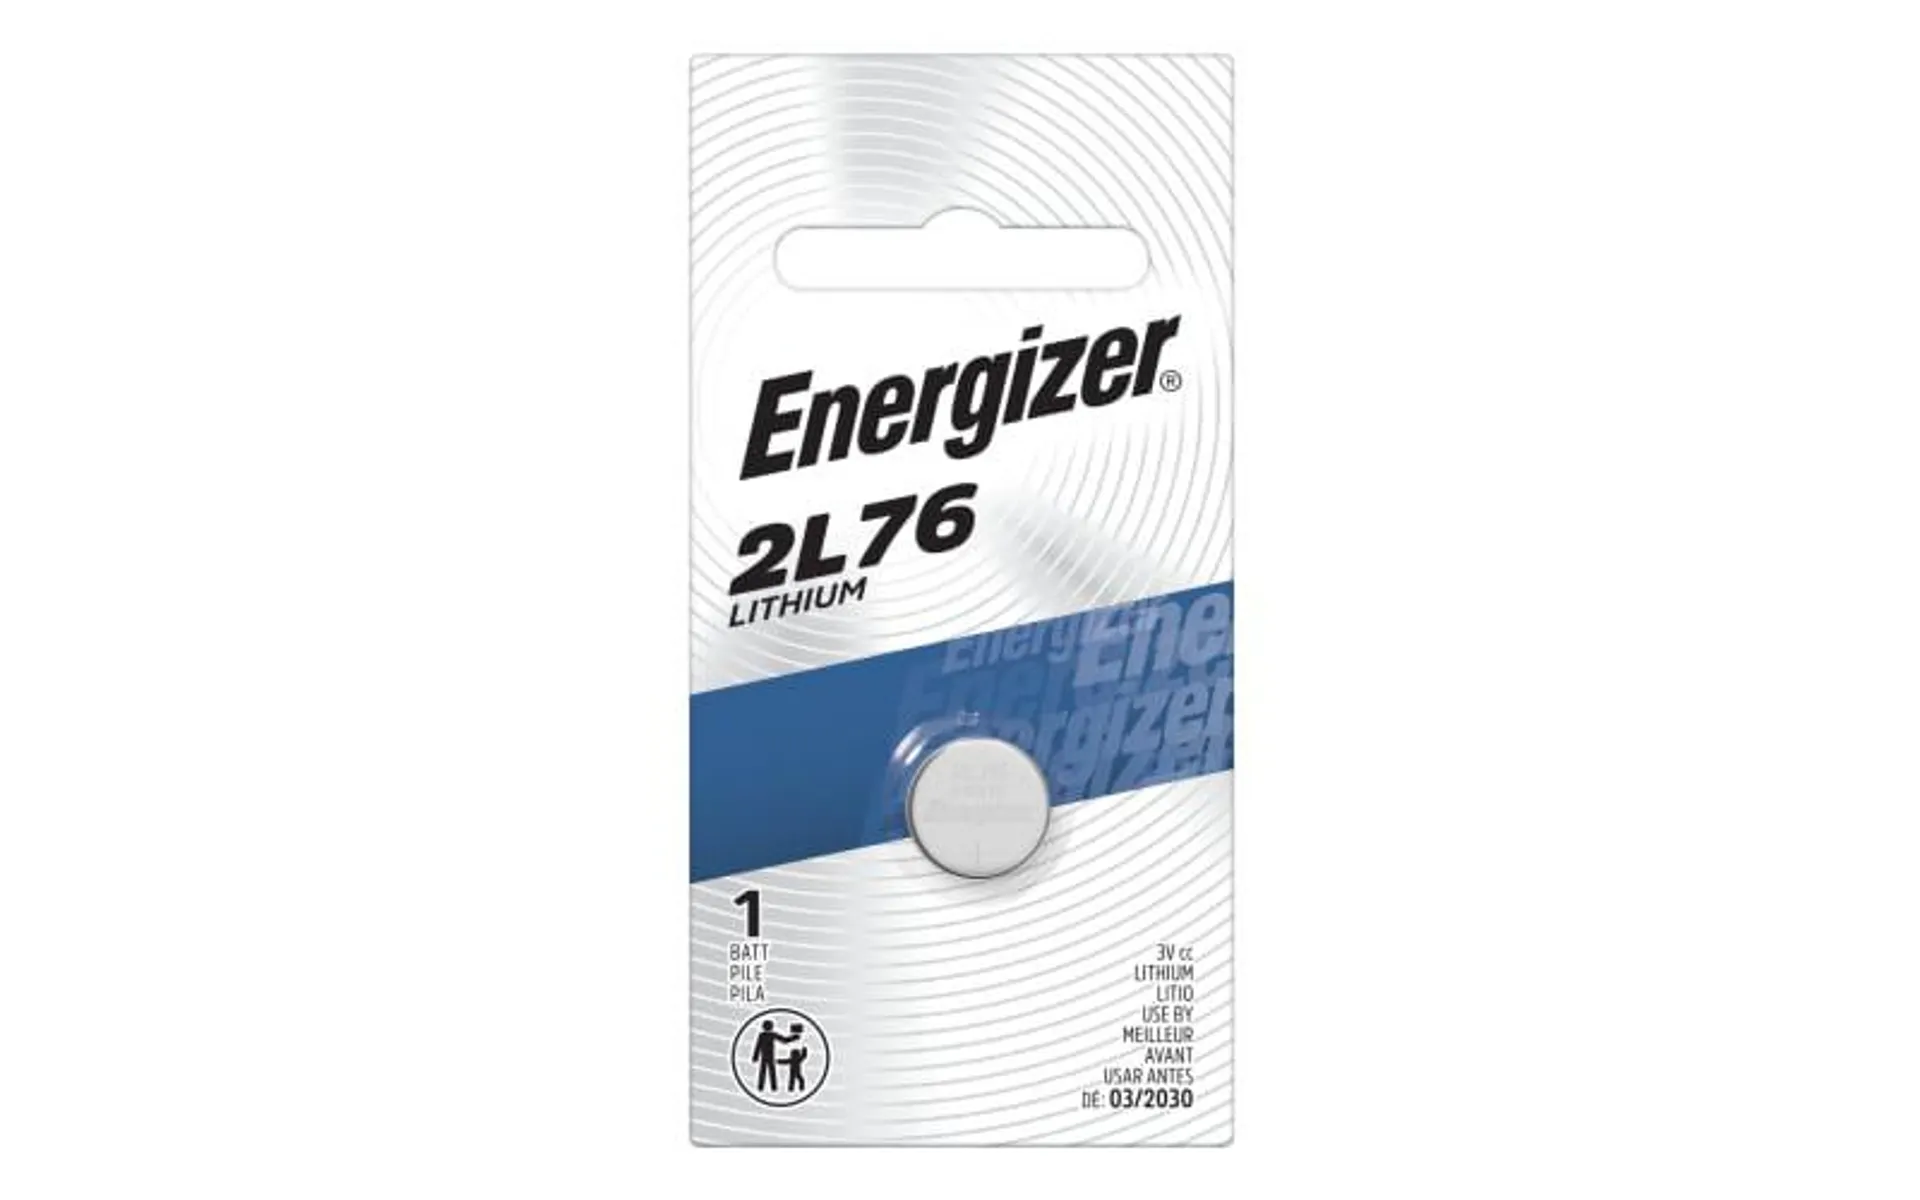 Energizer 2L76 3V Lithium Battery